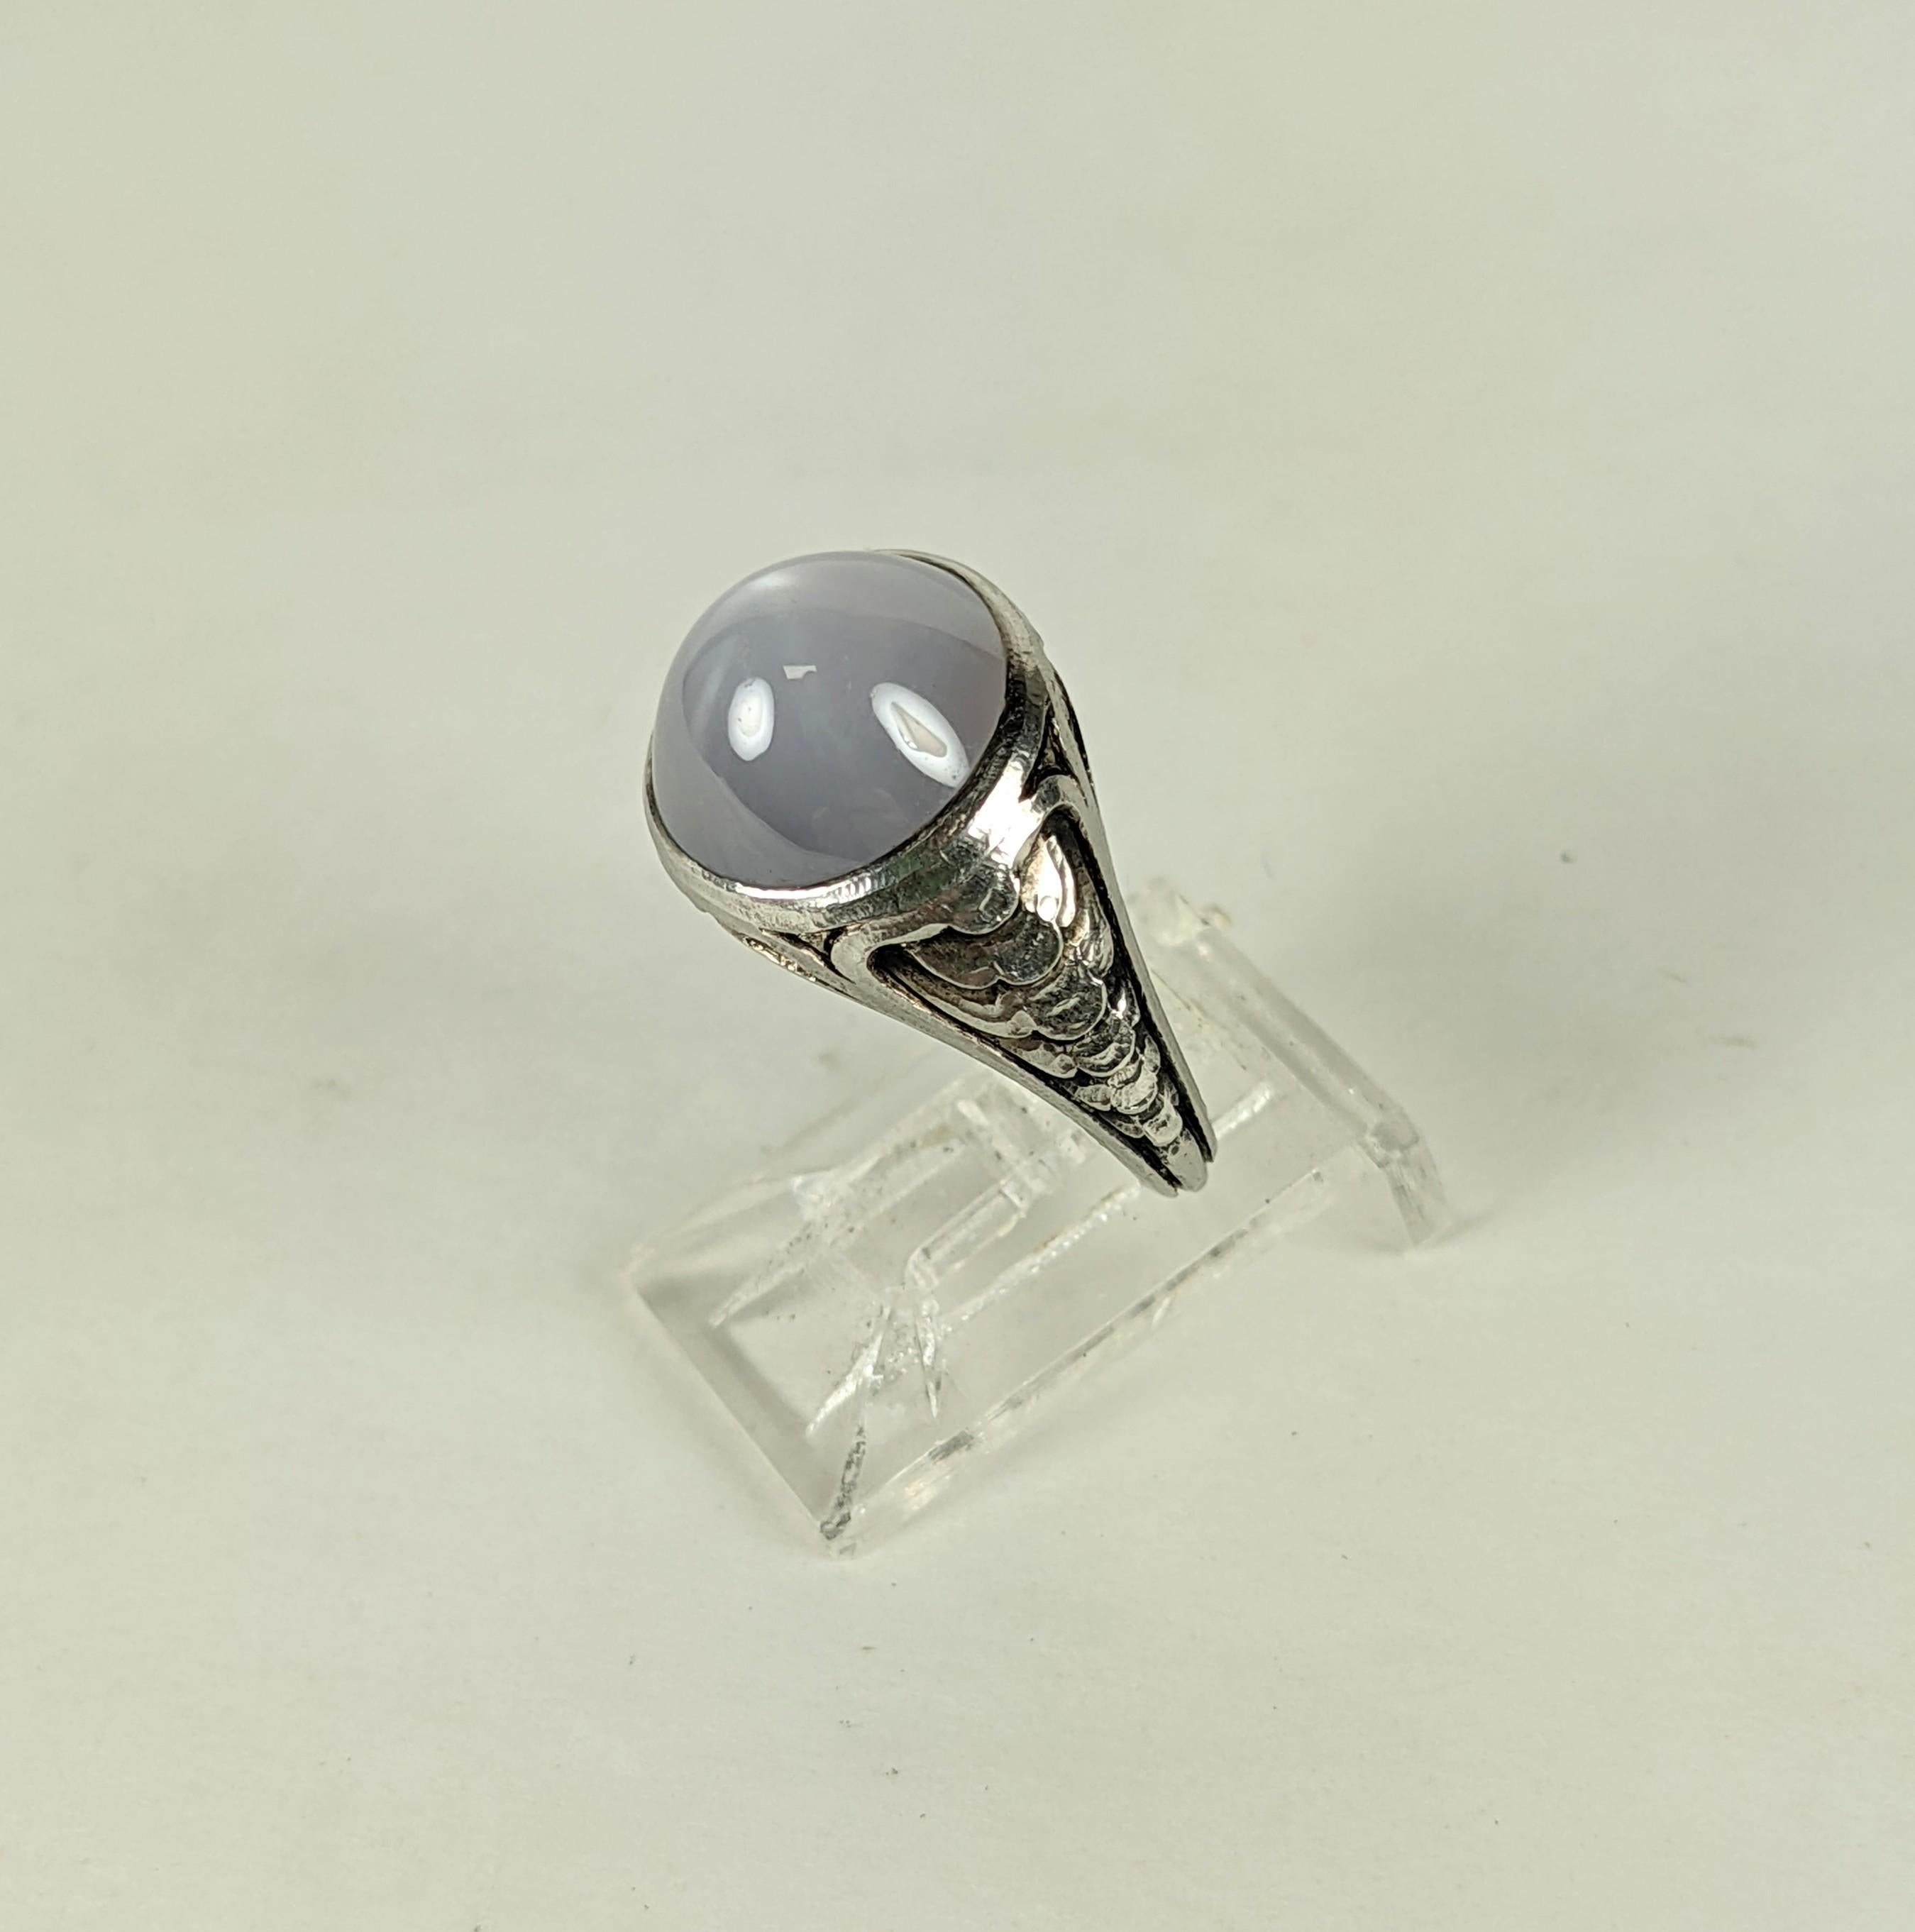 Jugendstil-Kugel Cabochon Stern Saphir Pinky Ring in Platin aus dem frühen 20. Jahrhundert gesetzt.  10-mm-Sternsaphir mit eleganter, gewellter Fassung, um 1900, USA. 
Kleinere Größe 4.
